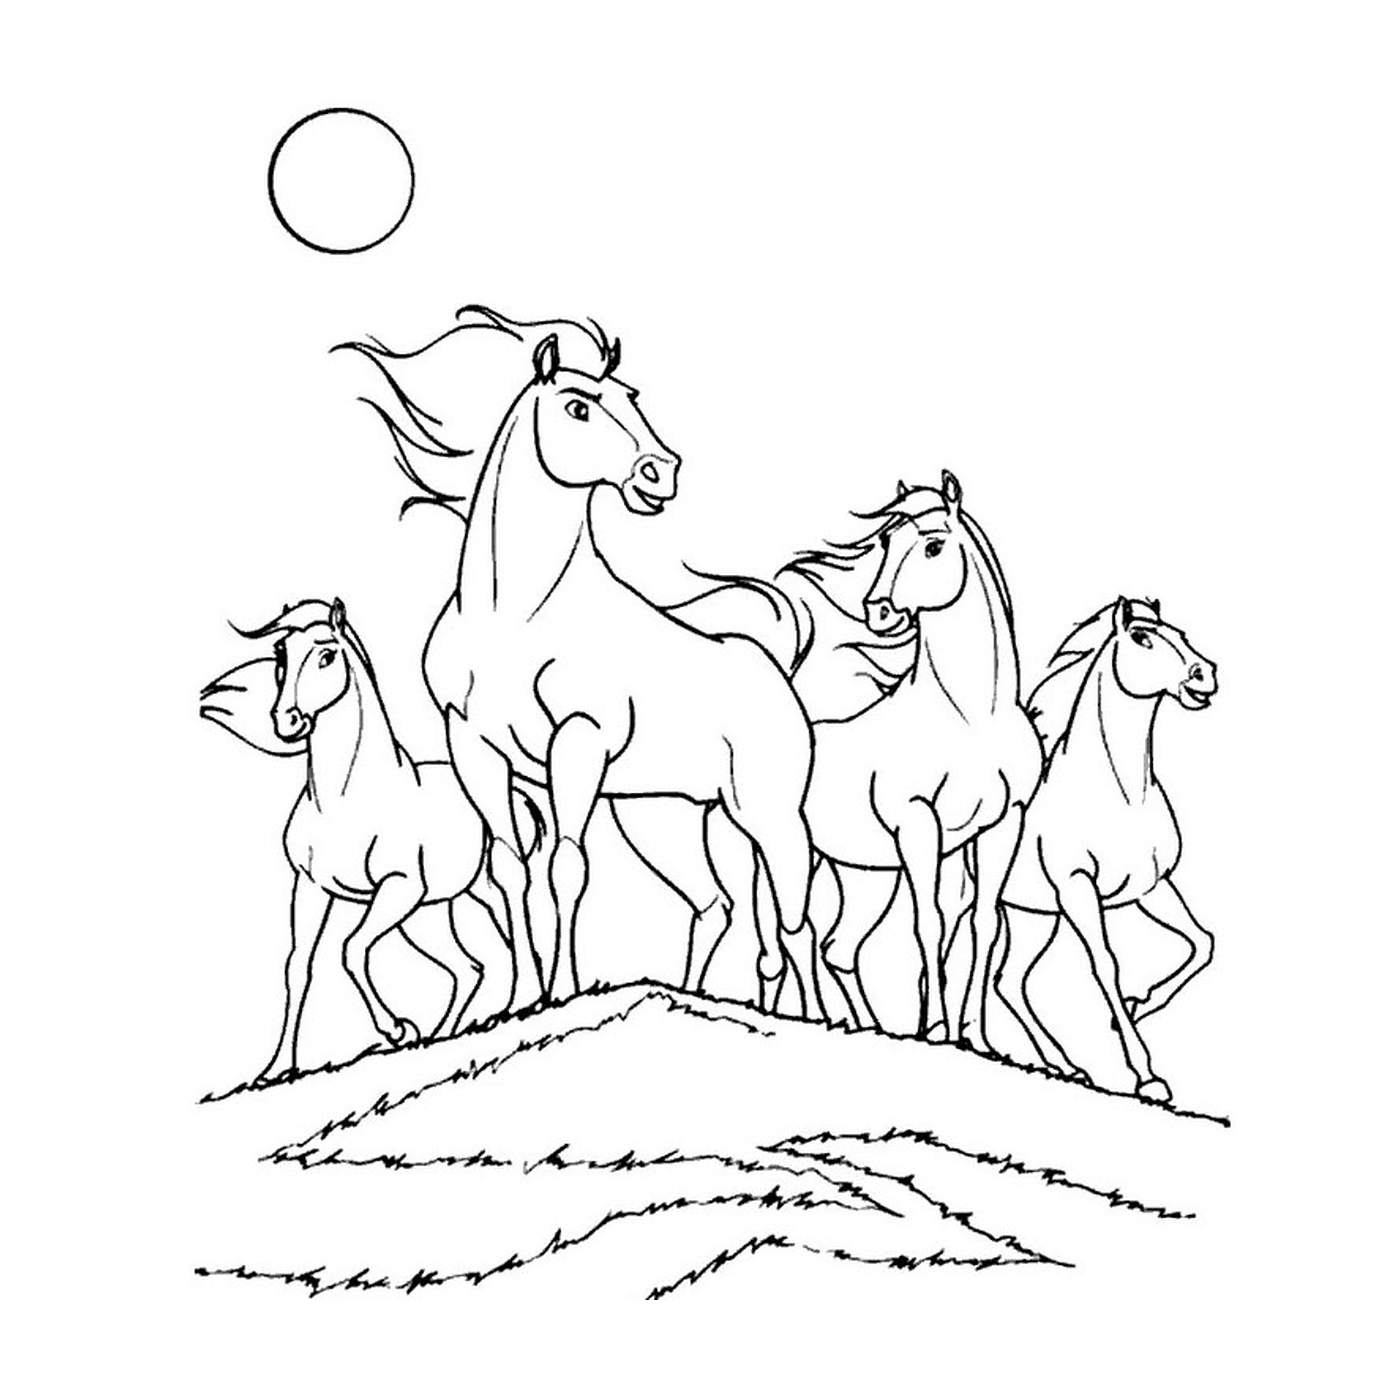  Gruppe von Pferden, die auf einem grasbewachsenen Hügel stehen 